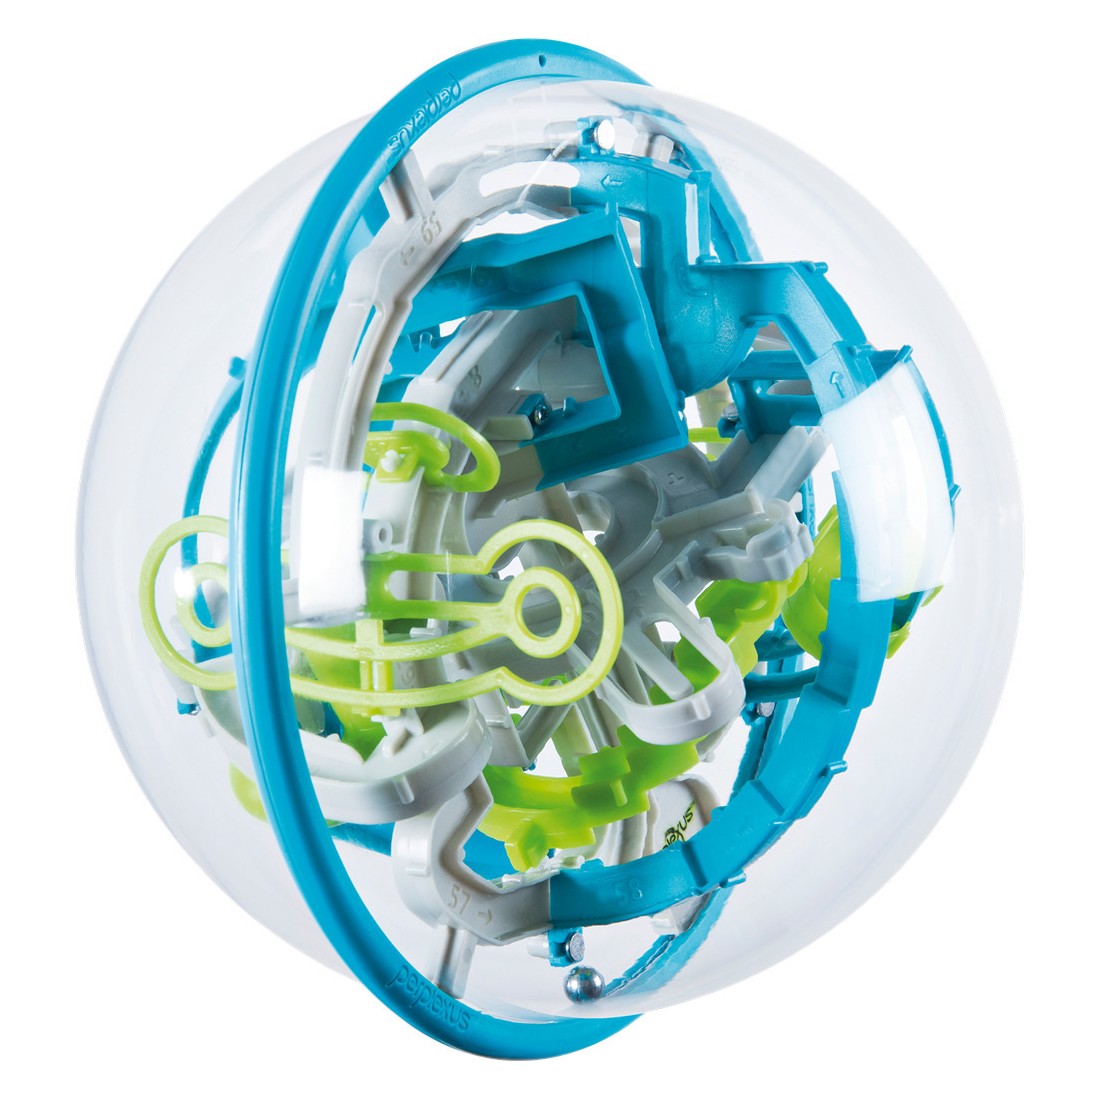 Boule Labyrinthe 3D - Casse-Tête - Jouet pour Enfant et famille